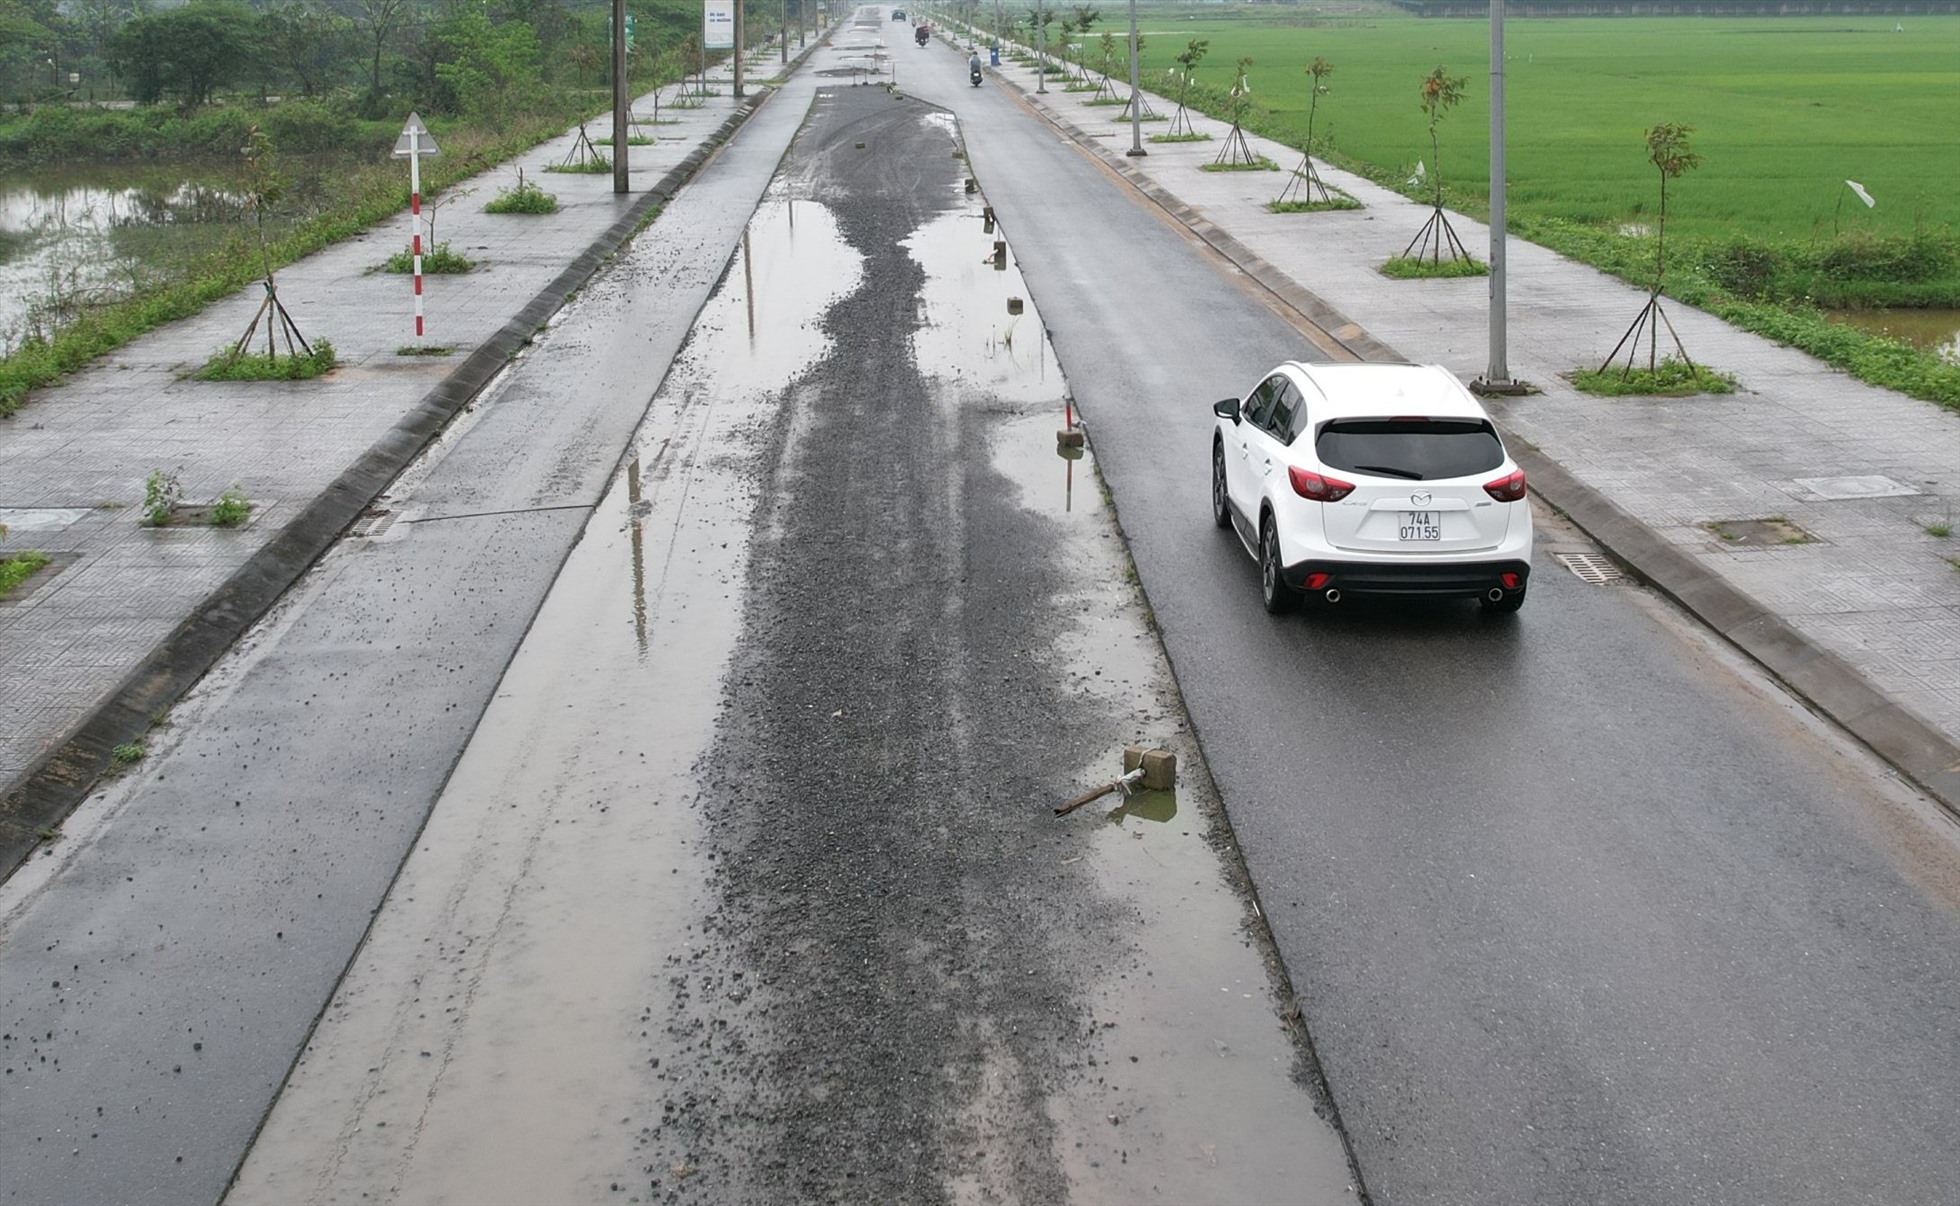 Đoạn đường dài 6,2km, nhưng có 1,6km xuất hiện các điểm hư hỏng. Có nơi, đường bị hỏng 1 làn, và bị bốc hết lớp nhựa. Trời mưa, nước ứ động trên mặt đường.